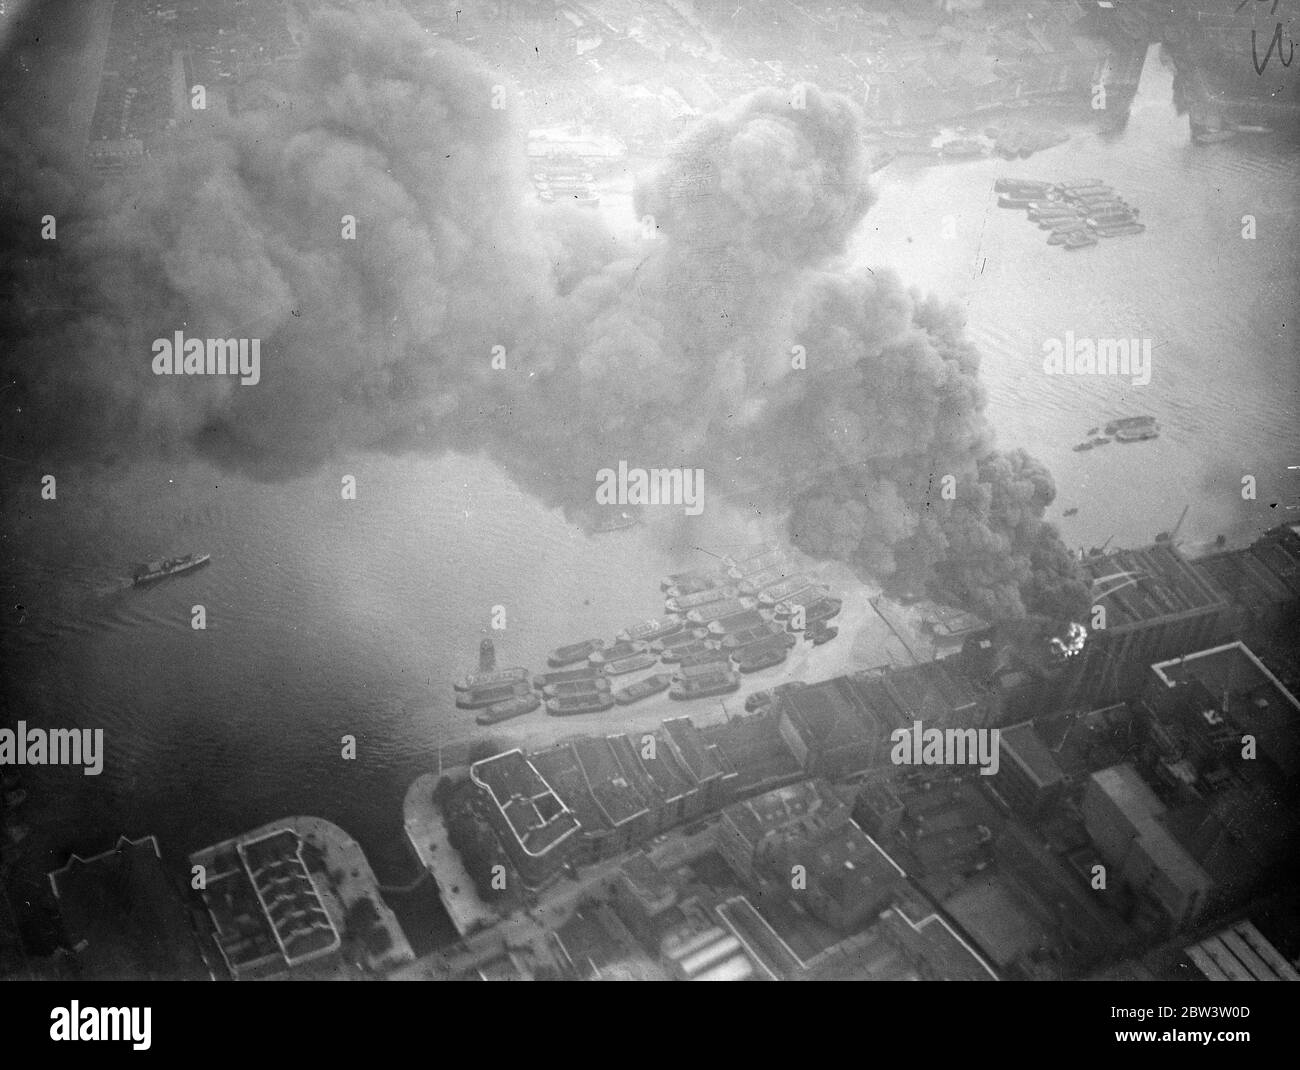 Les flotteurs de feu combattent le grand entrepôt de thé, qui menace le dockland de Londres . Combattre les flammes du feu flotte sur la Tamise . L'entrepôt flamboyant - image de l'air . 25 septembre 1935 Banque D'Images